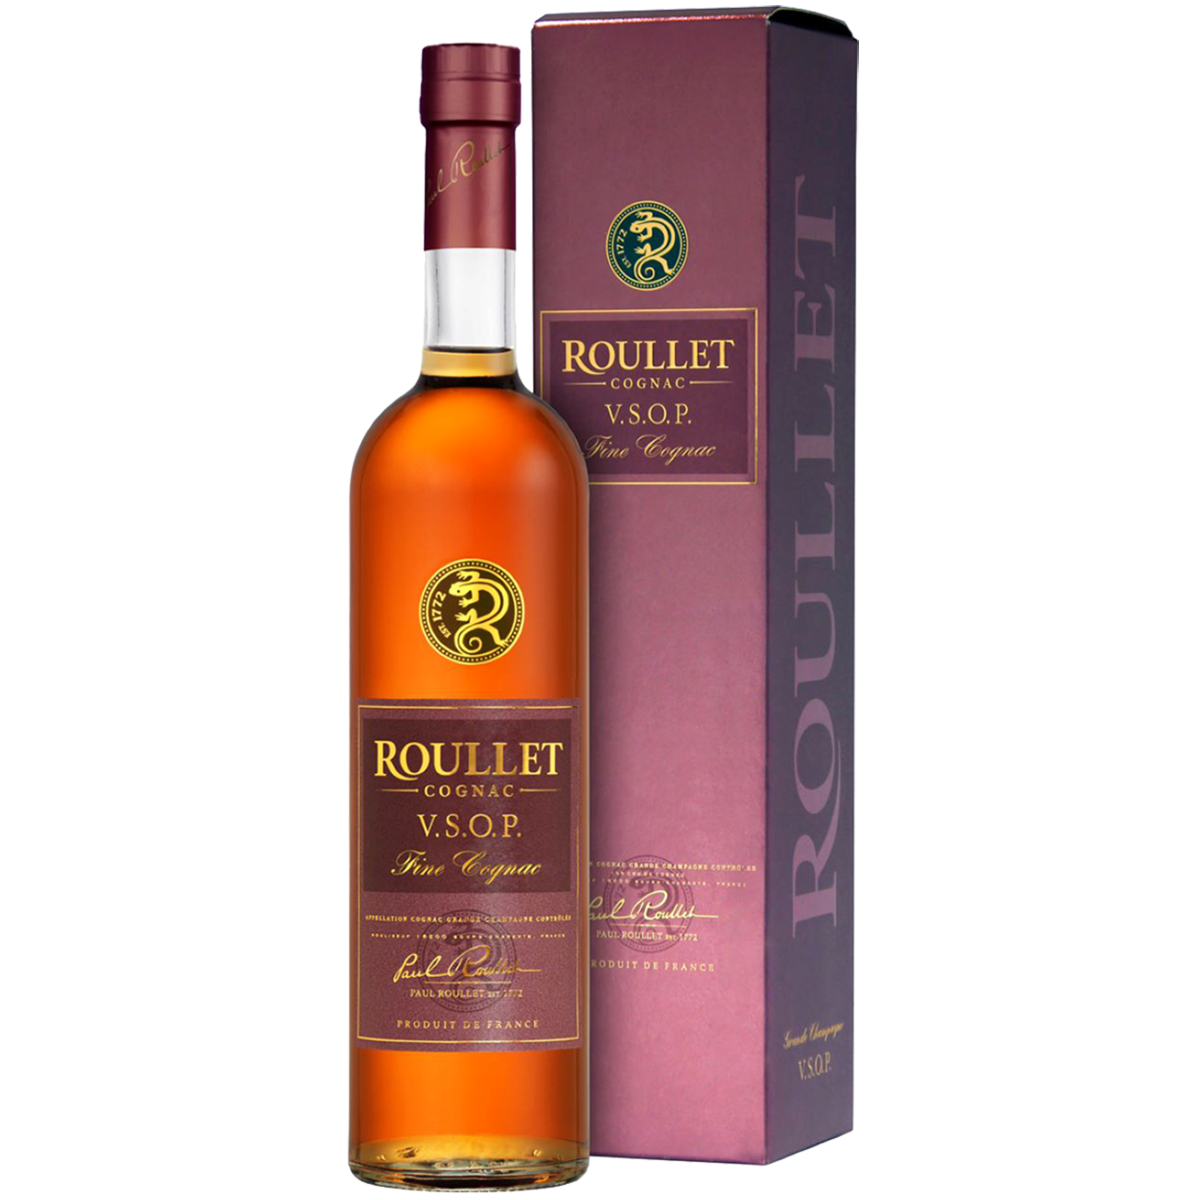 Roullet cognac цена. Roullet VSOP 0.5Л. Коньяк Рулле вс 40% 0.5л. Коньяк Рулле вс 40% 0,7л п/у Франция. Коньяк Рулле VSOP 0.5Л.